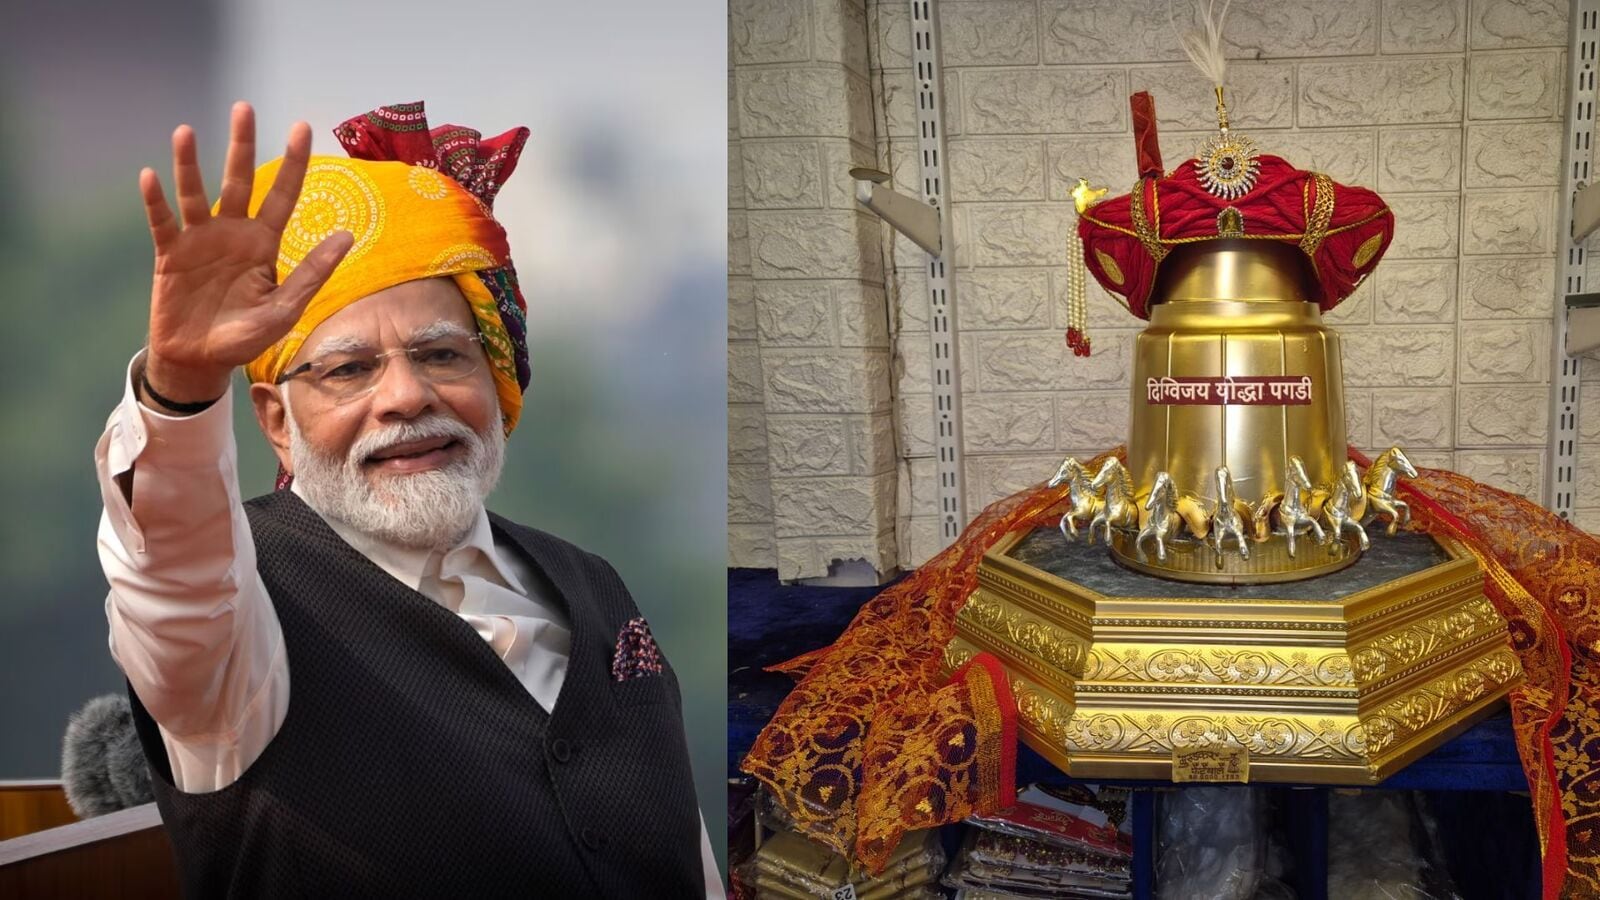 Modi Pagdi : पंतप्रधान मोदींसाठी एयर कंडीशन पगडी! चांदीच्या कोयऱ्या व डायमंडचा सूर्य असलेली 'दिग्विजय योद्धा पगडी' तयार